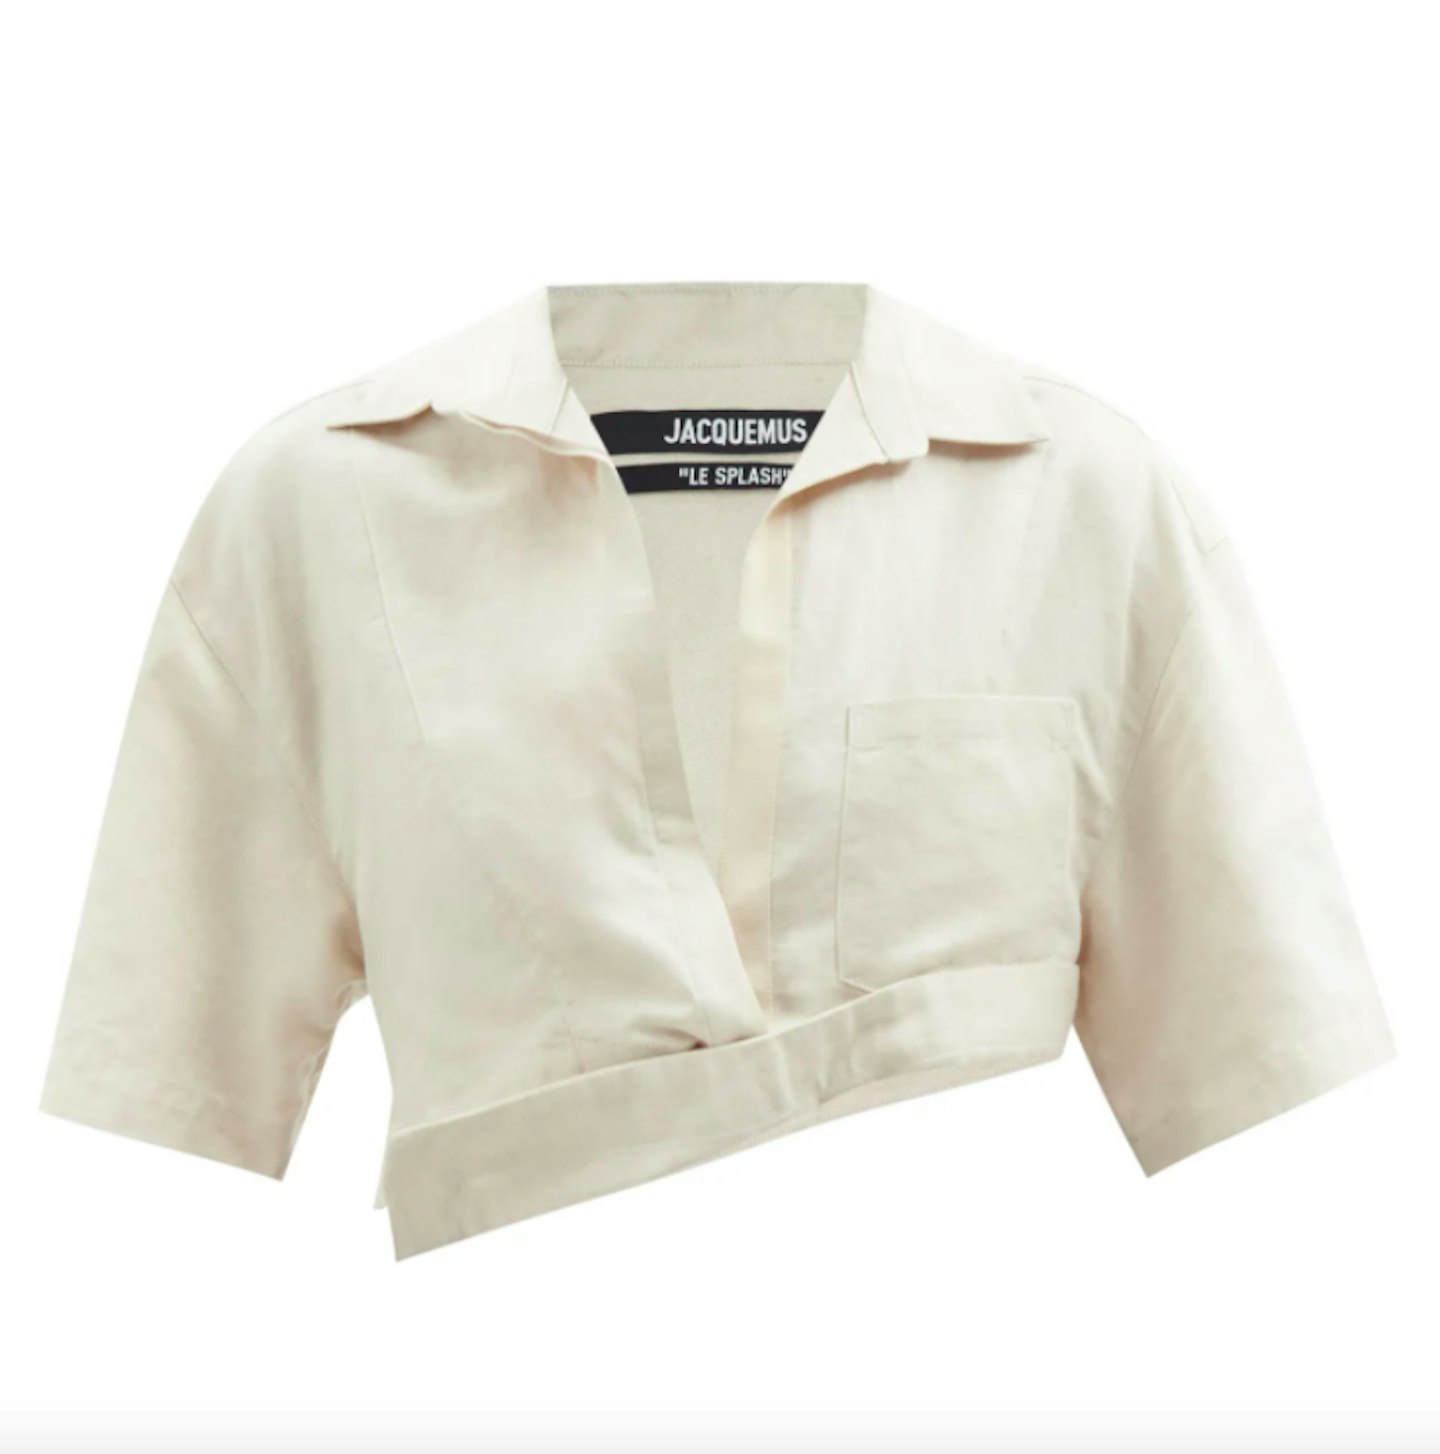 Jacquemus, Capri Cotton And Linen-Blend Cropped Shirt, £300